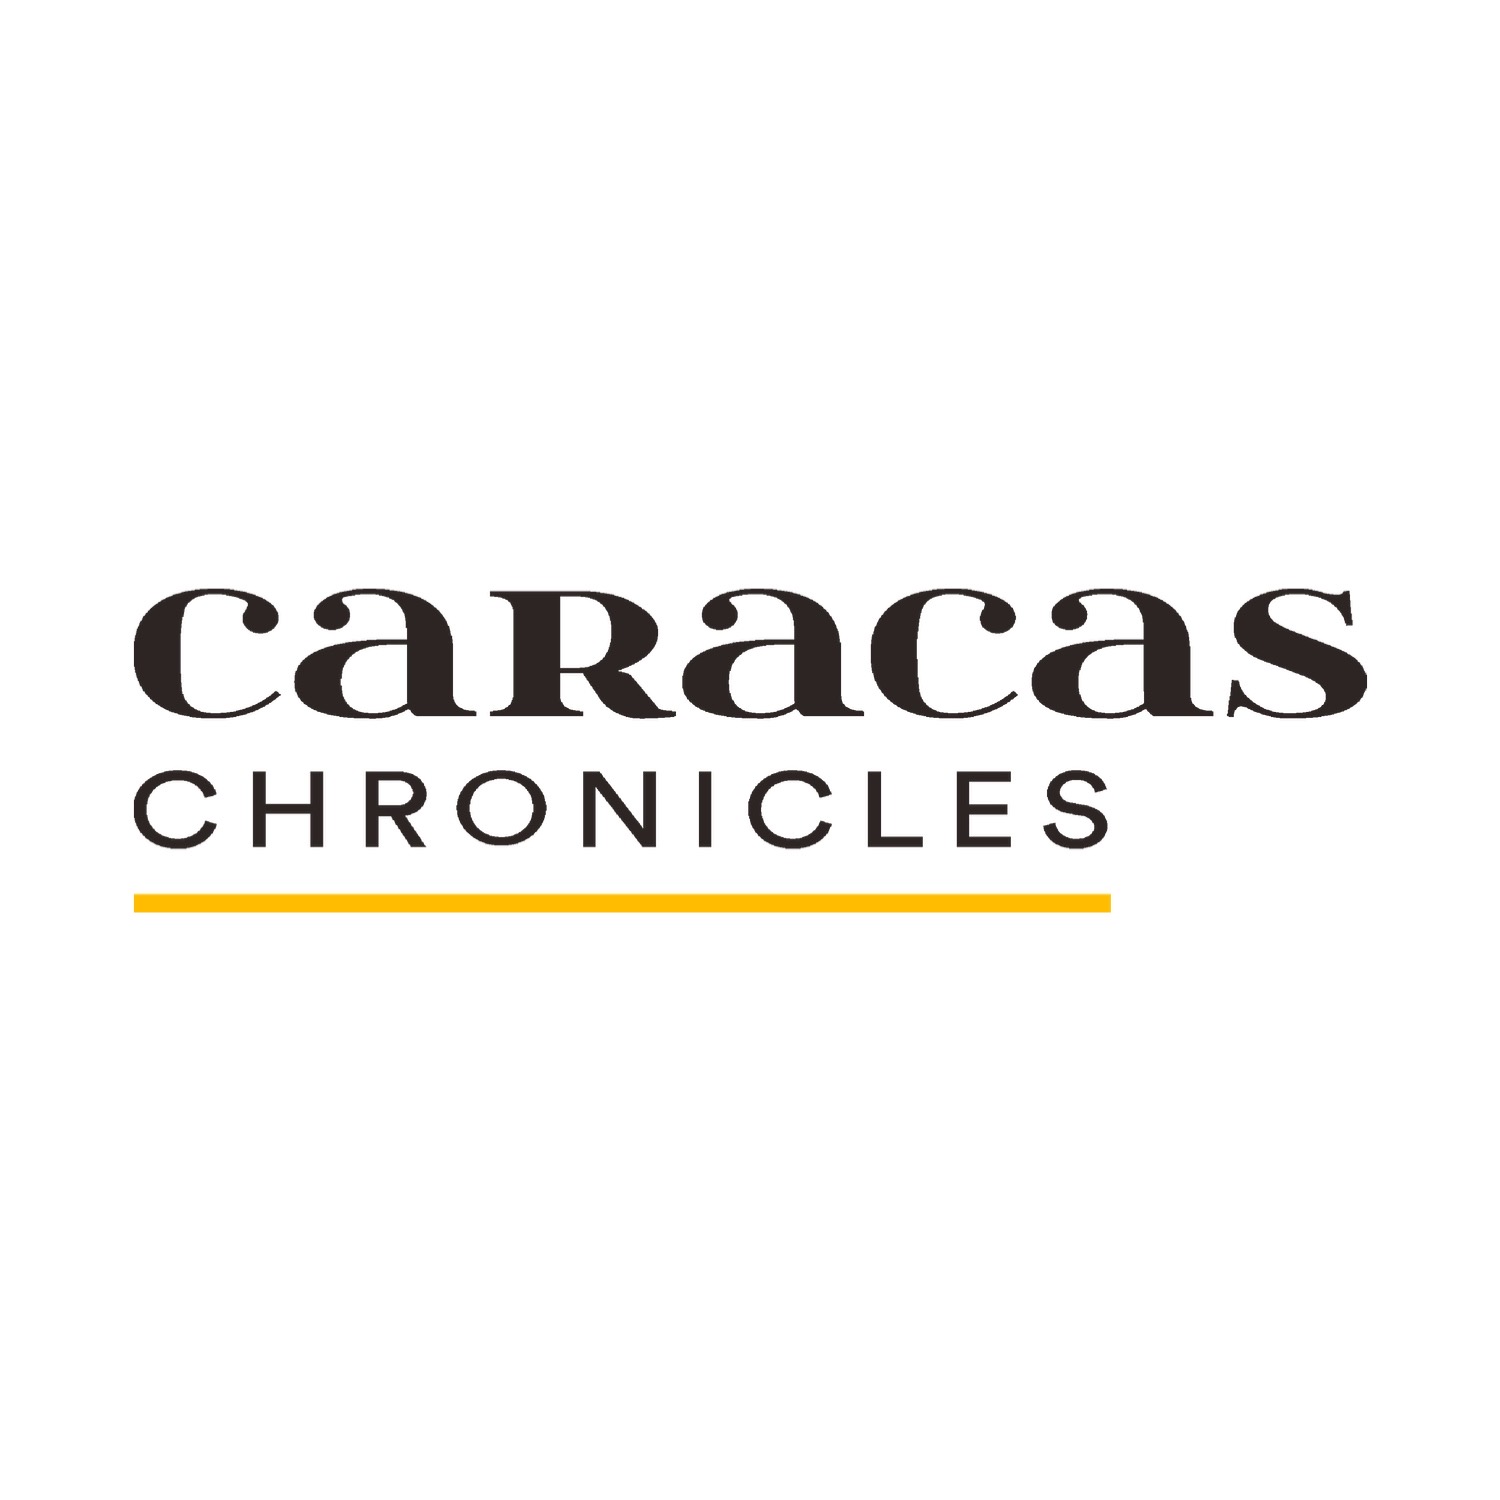 (c) Caracaschronicles.com